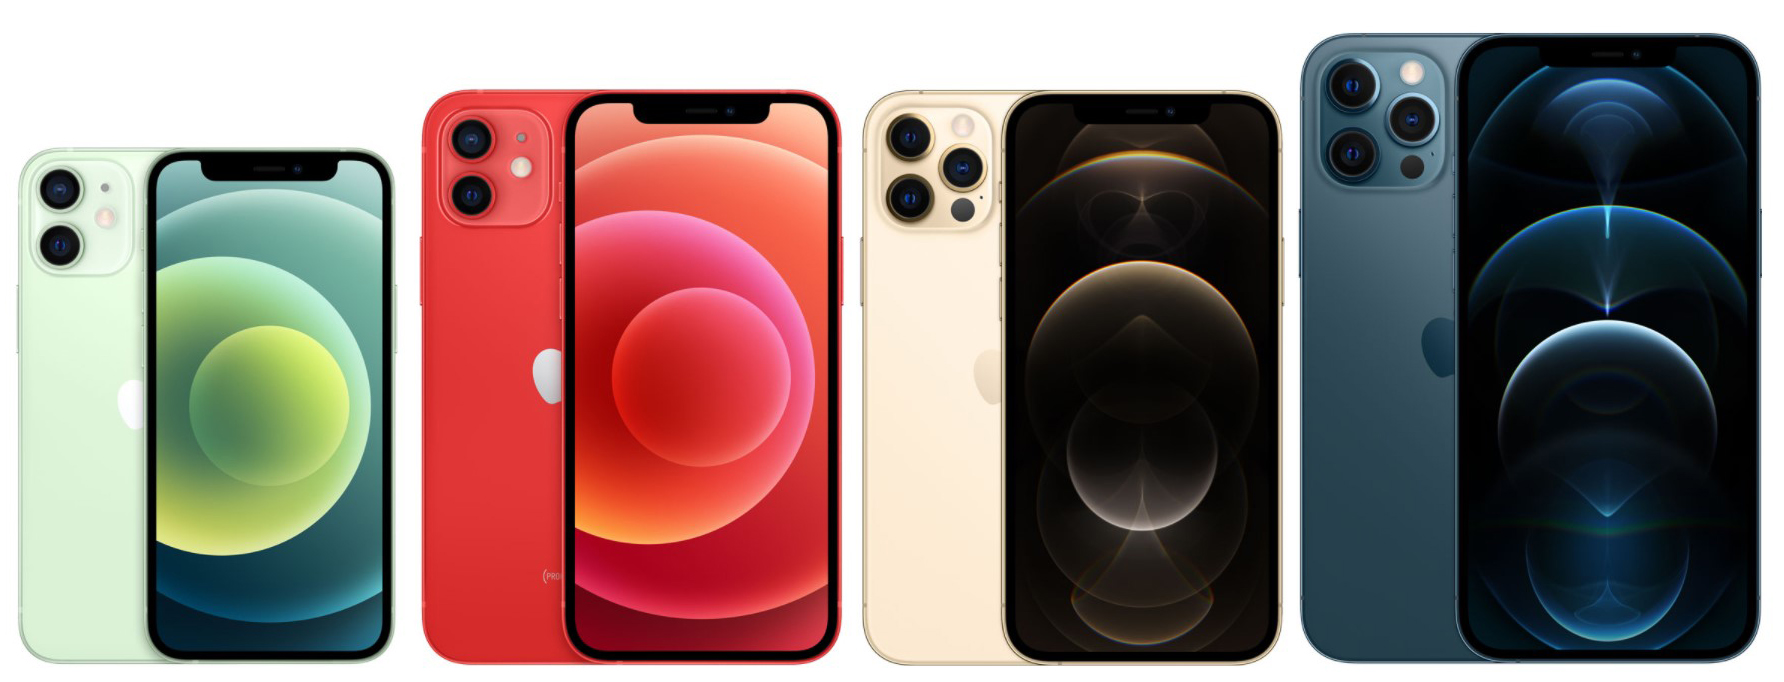 Сравнение характеристик четырёх моделей iPhone 12